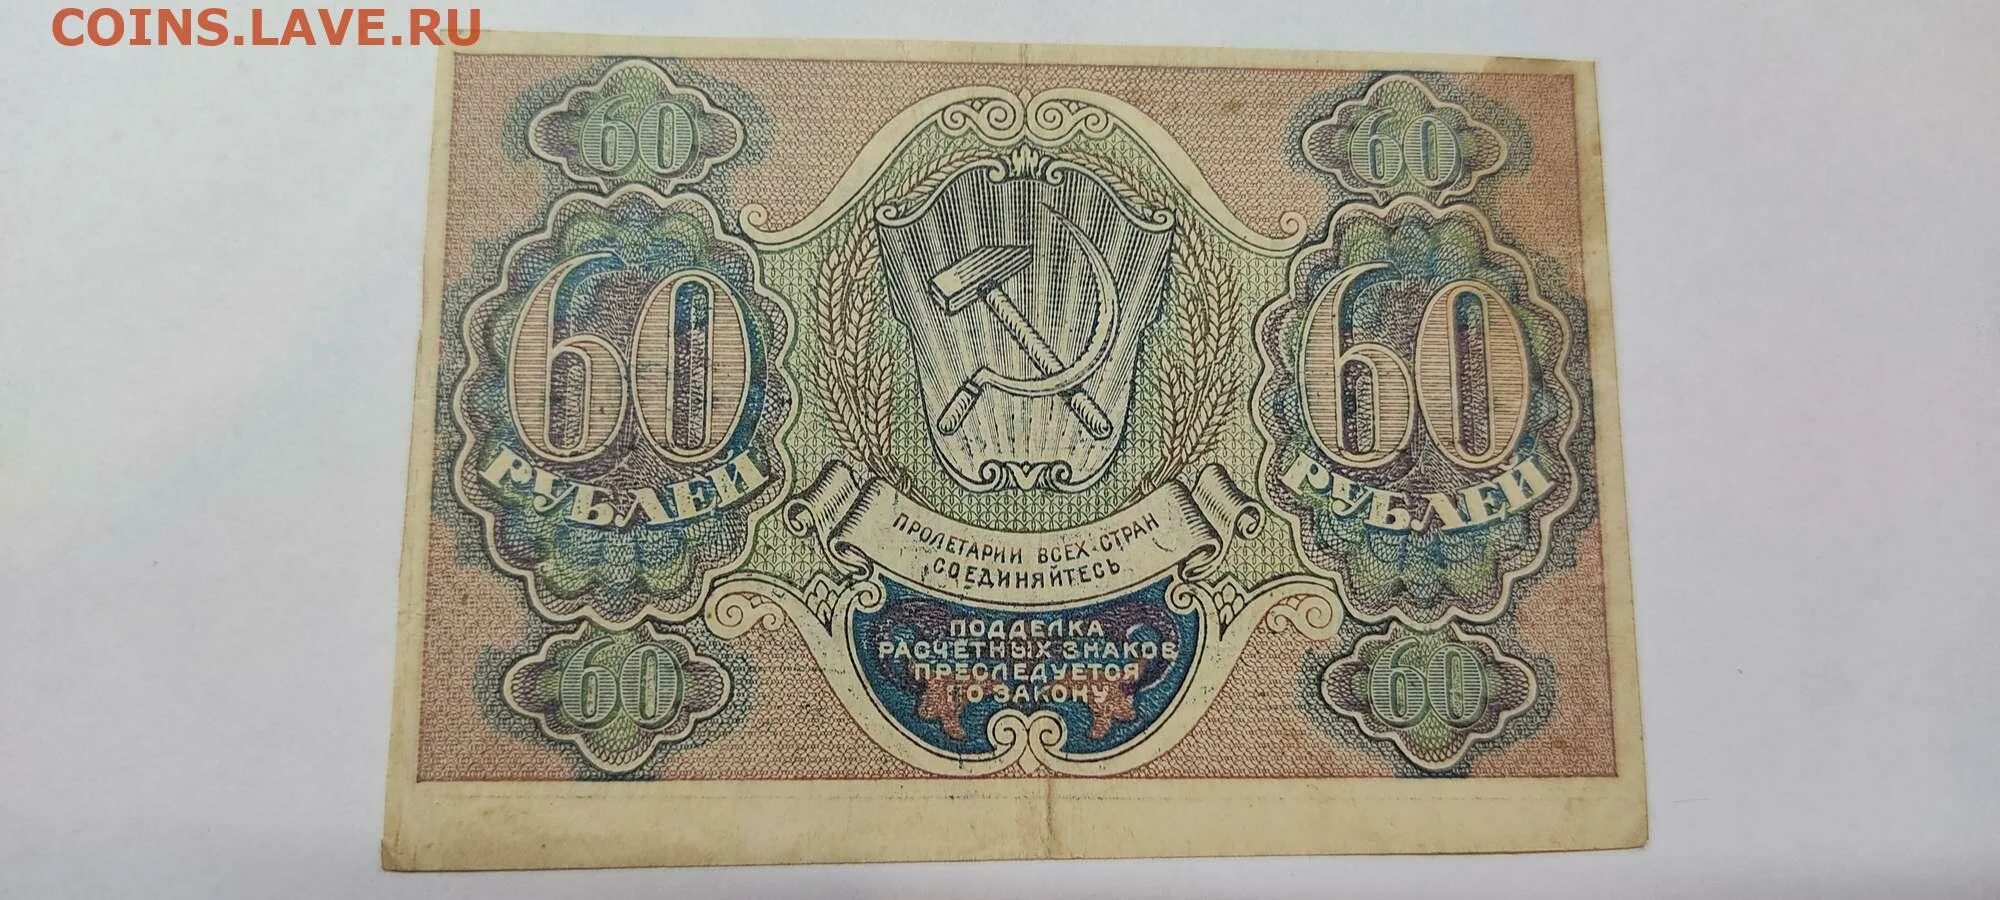 14 60 в рублях. 60 Рублей. Расчетный знак 60 рублей. Рубли в 60-х годах XIX В. 60 Рублей фото.